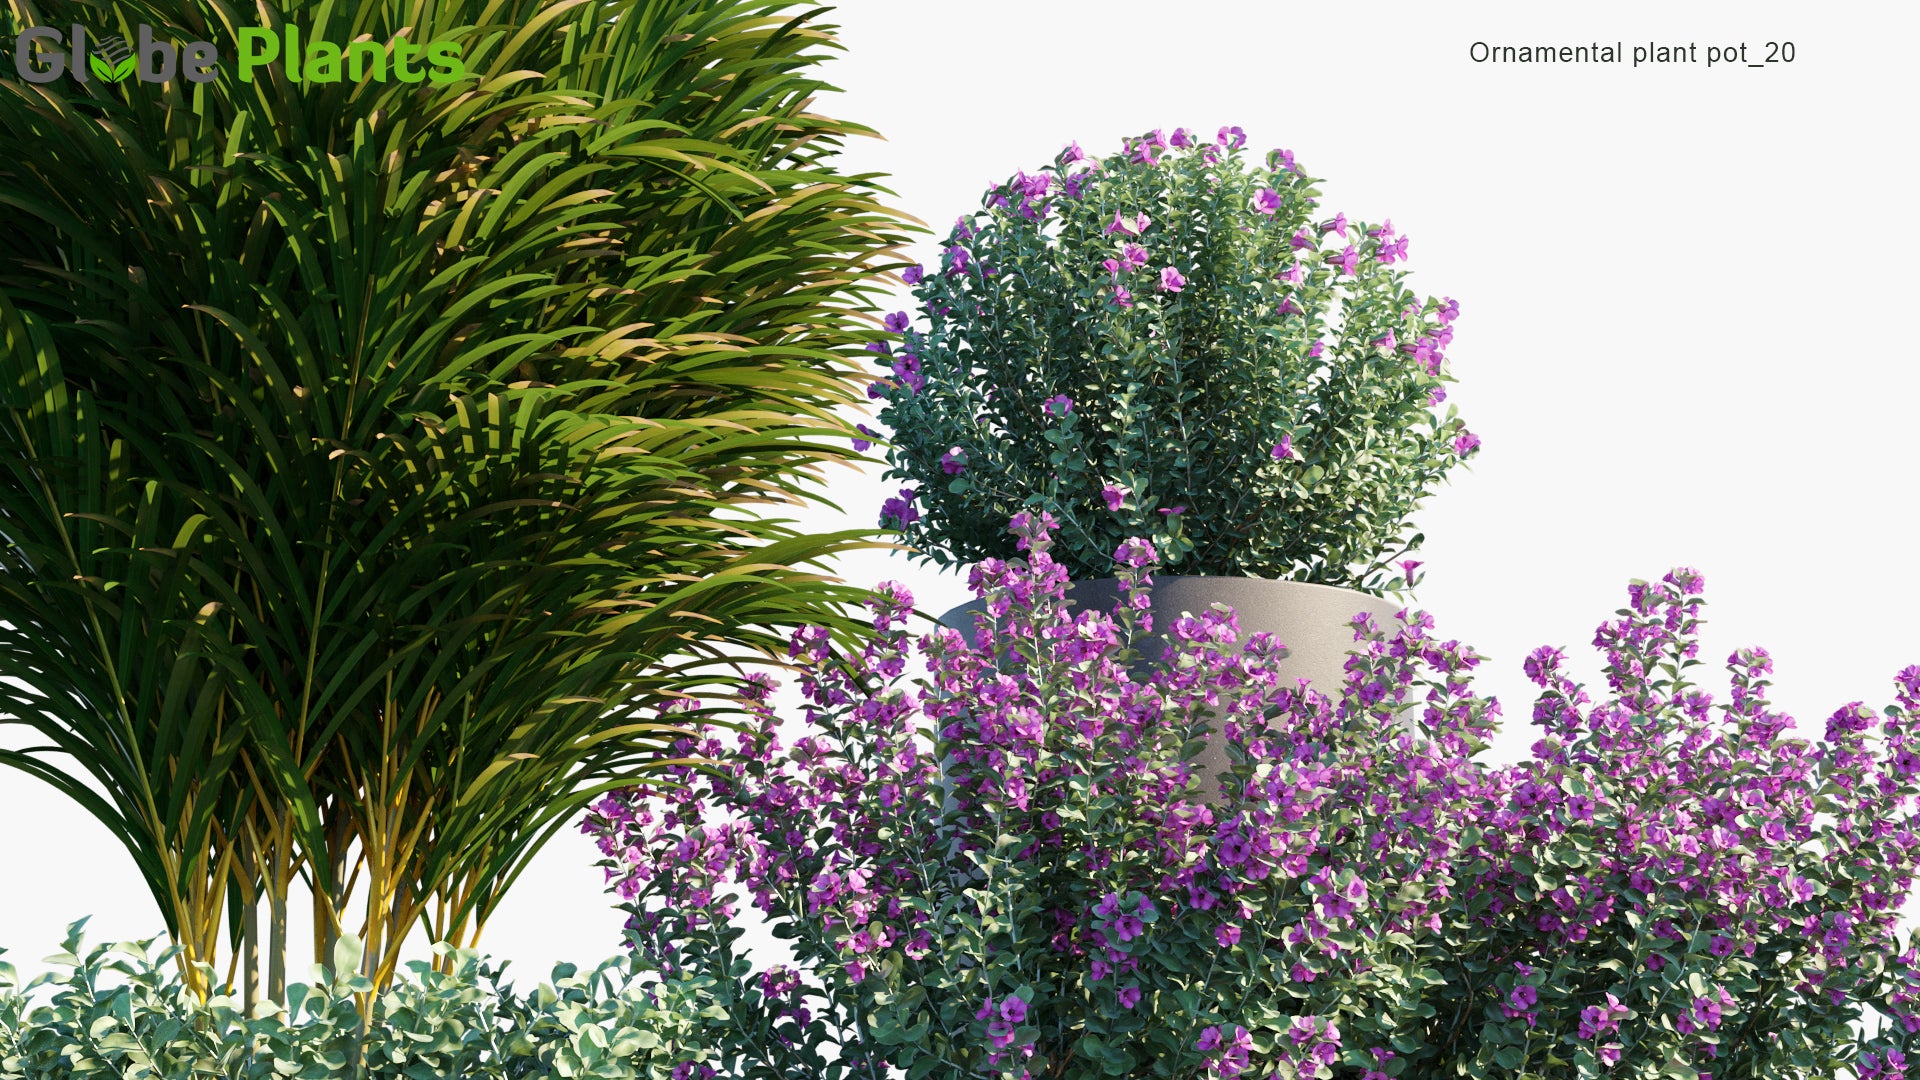 Ornamental Pot Plant 20 - Leucophyllum Frutescens, Dypsis Lutescens (3D Model)